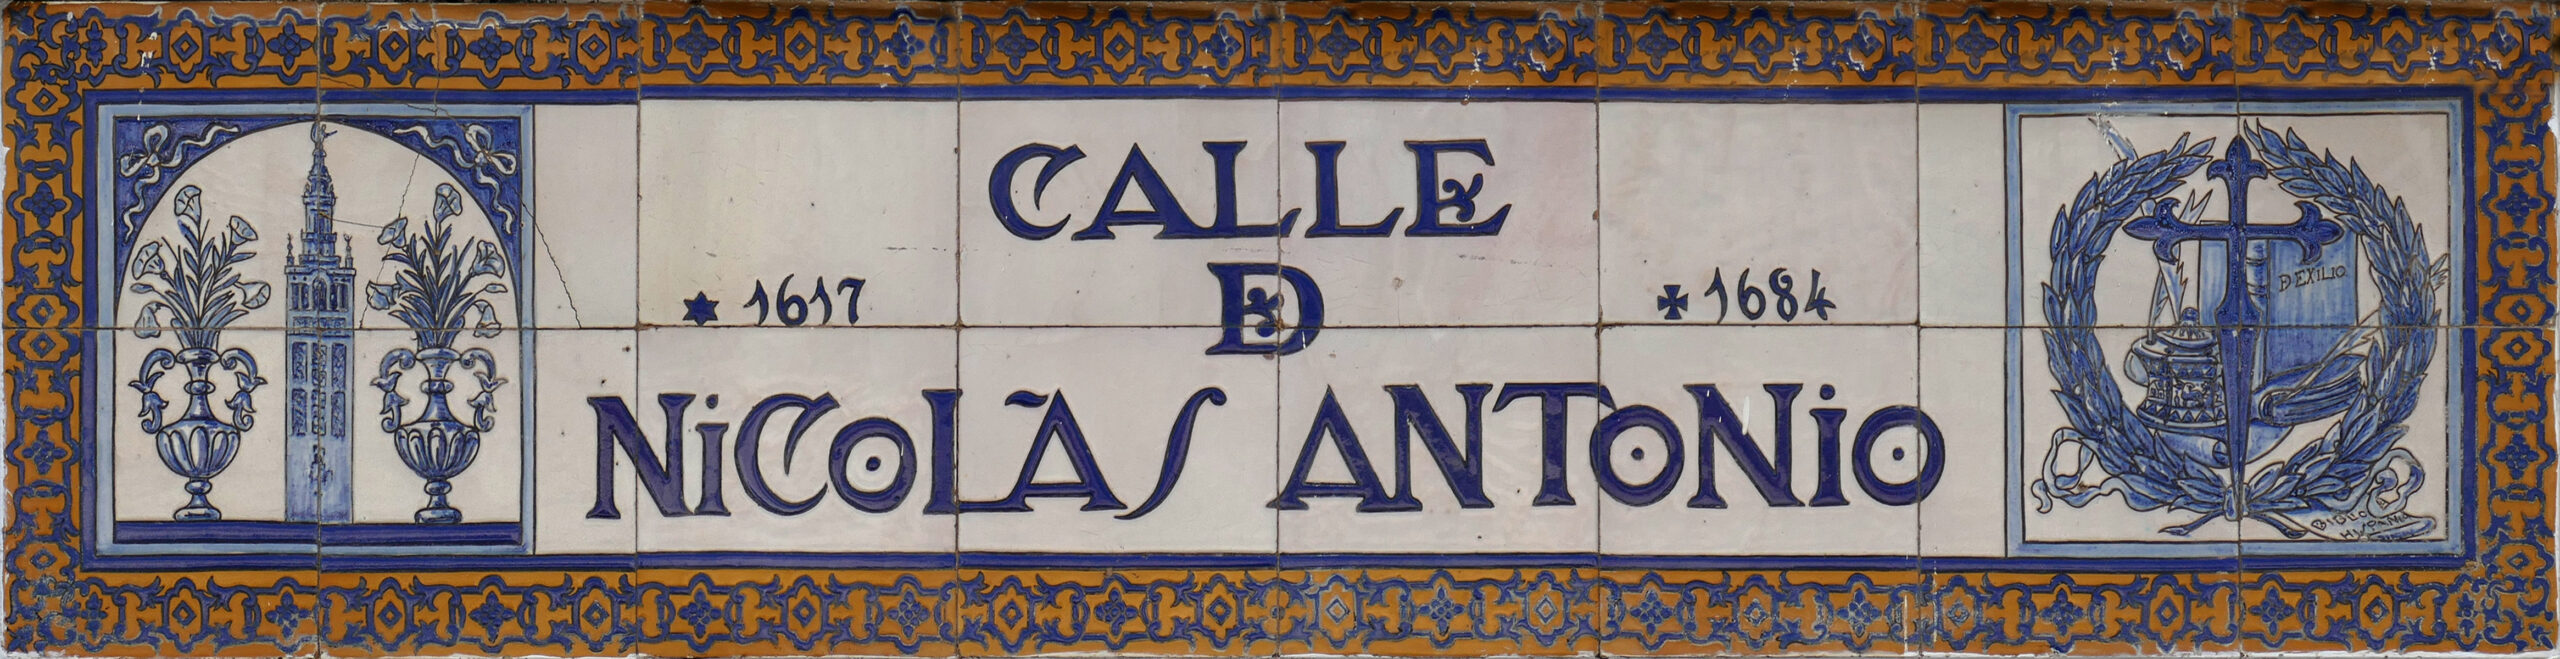 00984. Rótulo de la calle de Nicolás Antonio. Sevilla.